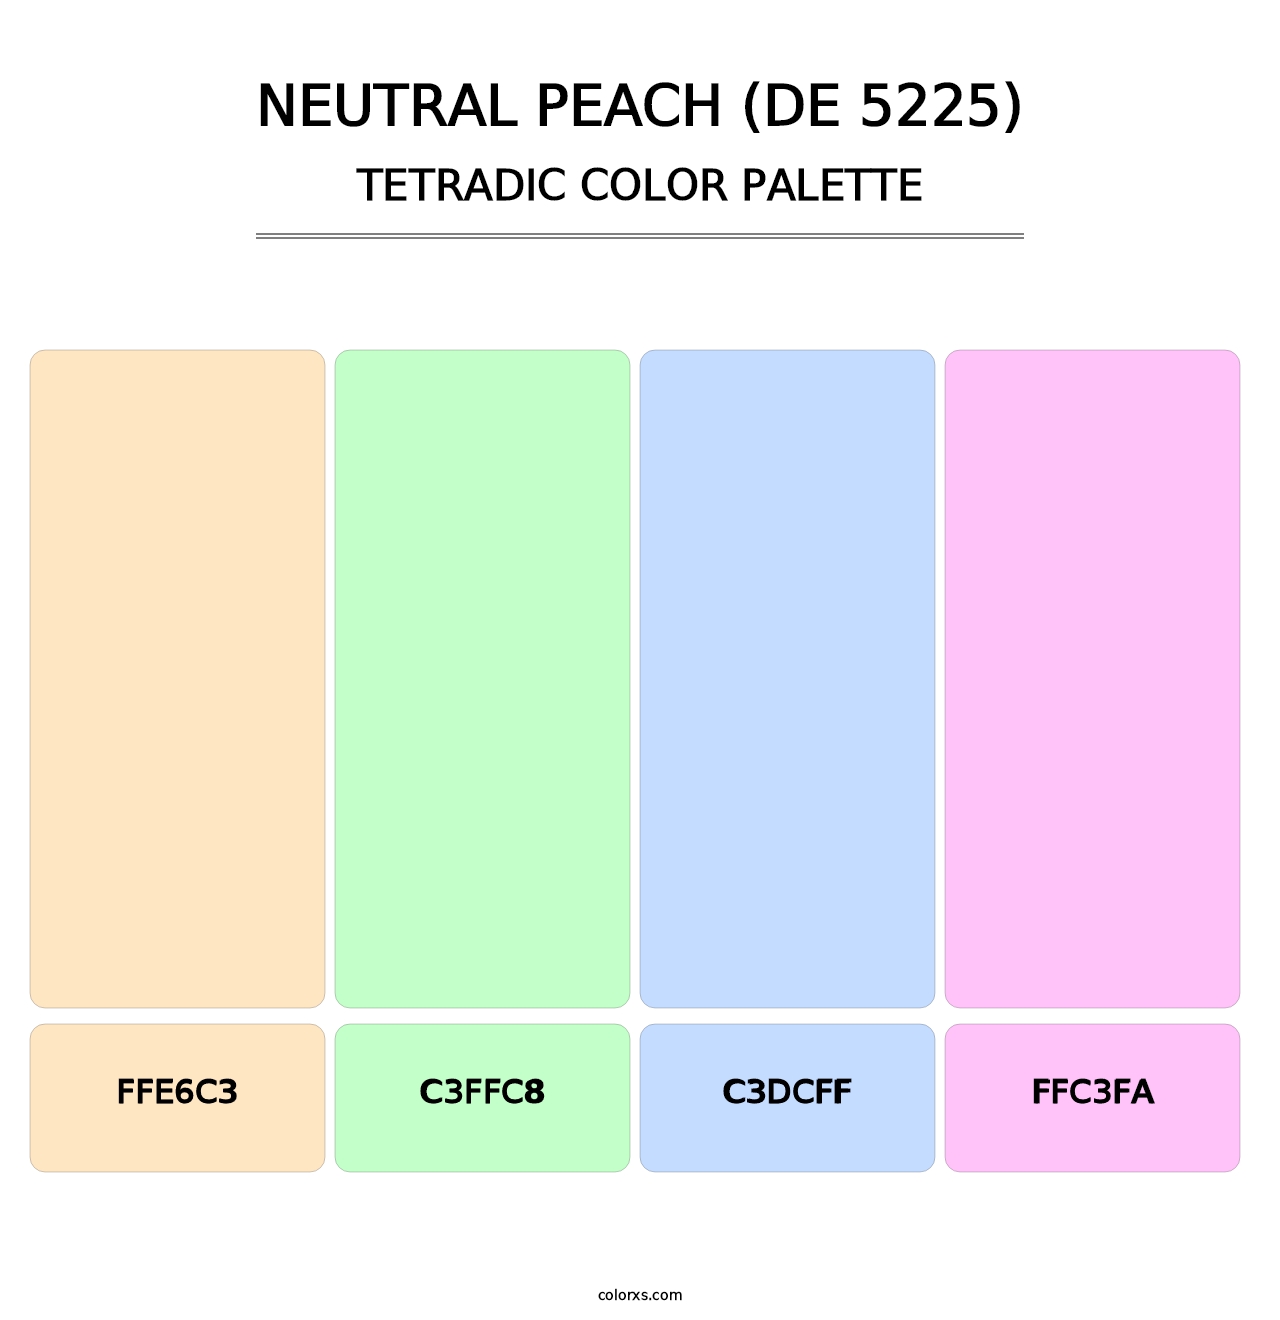 Neutral Peach (DE 5225) - Tetradic Color Palette